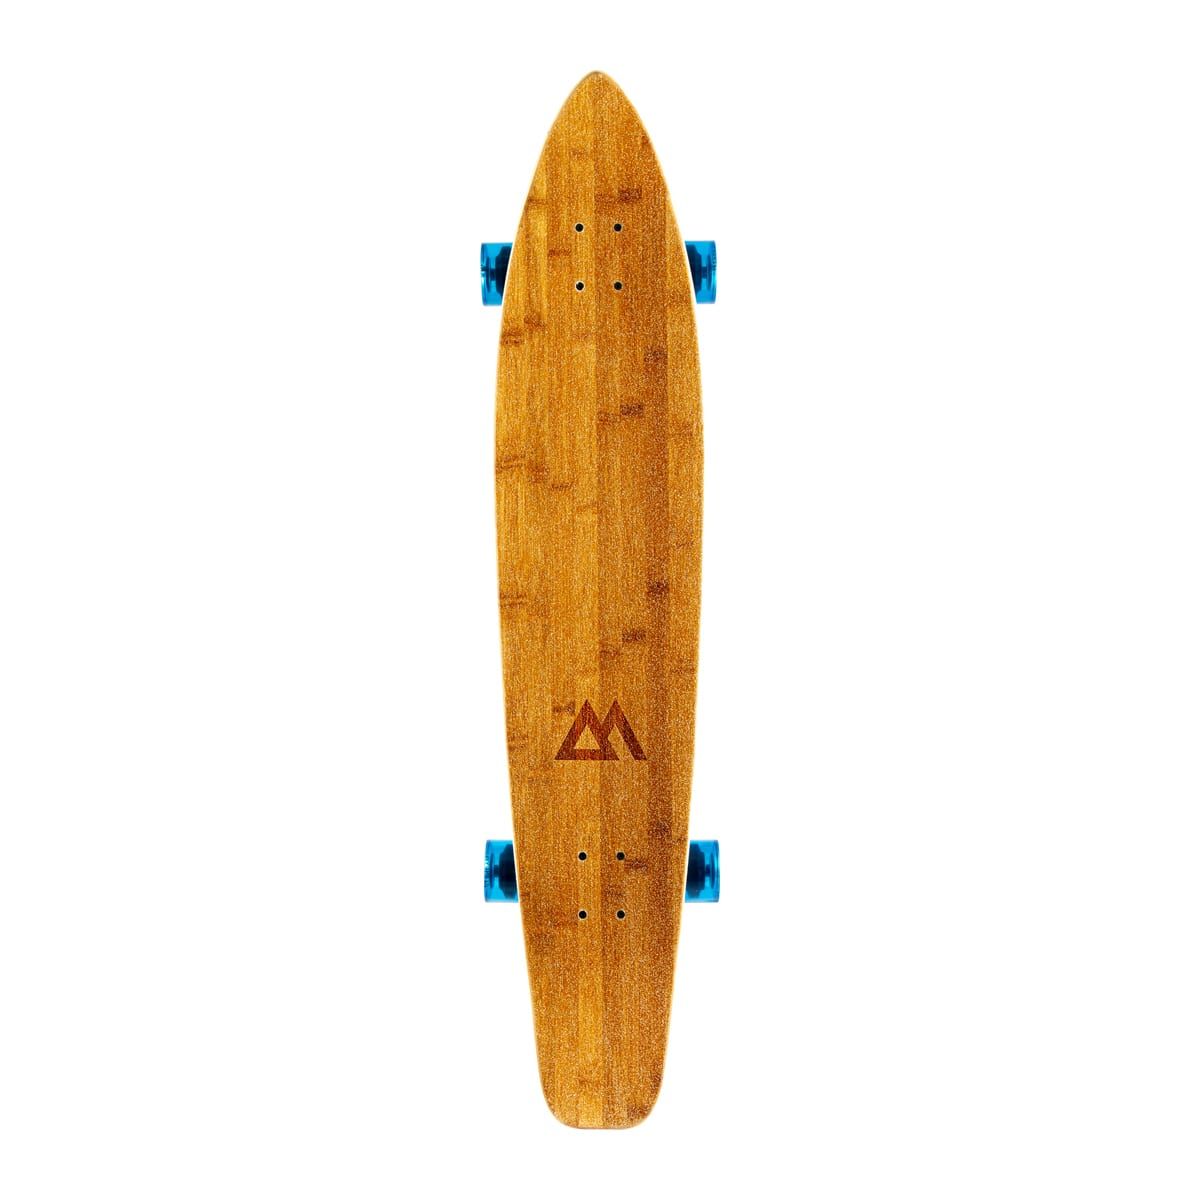 Magneto 44 Inch Kicktail Longboard Skateboard - Blue